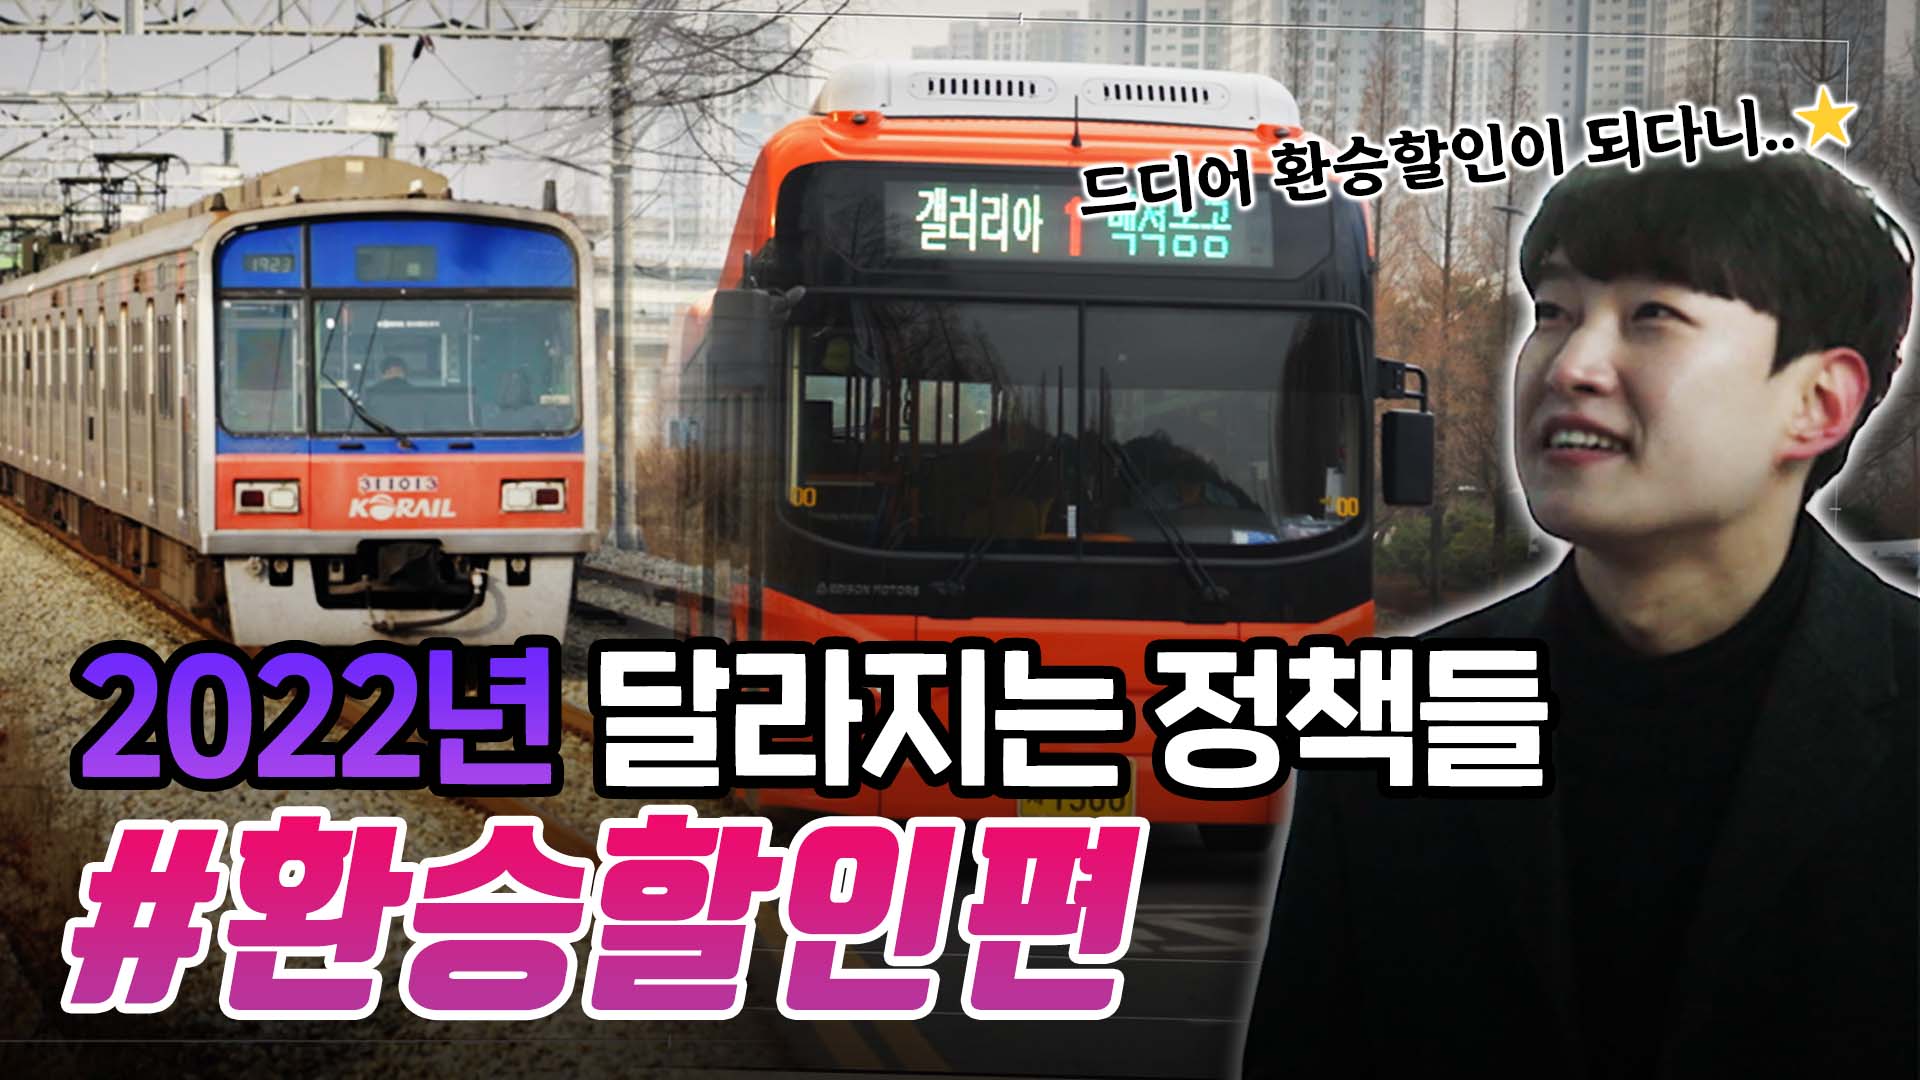 [2022이렇게 바뀐다!] 22년 3월 19일부터 광역 전철-천안 시내버스 환승할인이 시작됩니다!？？？？의 대표이미지